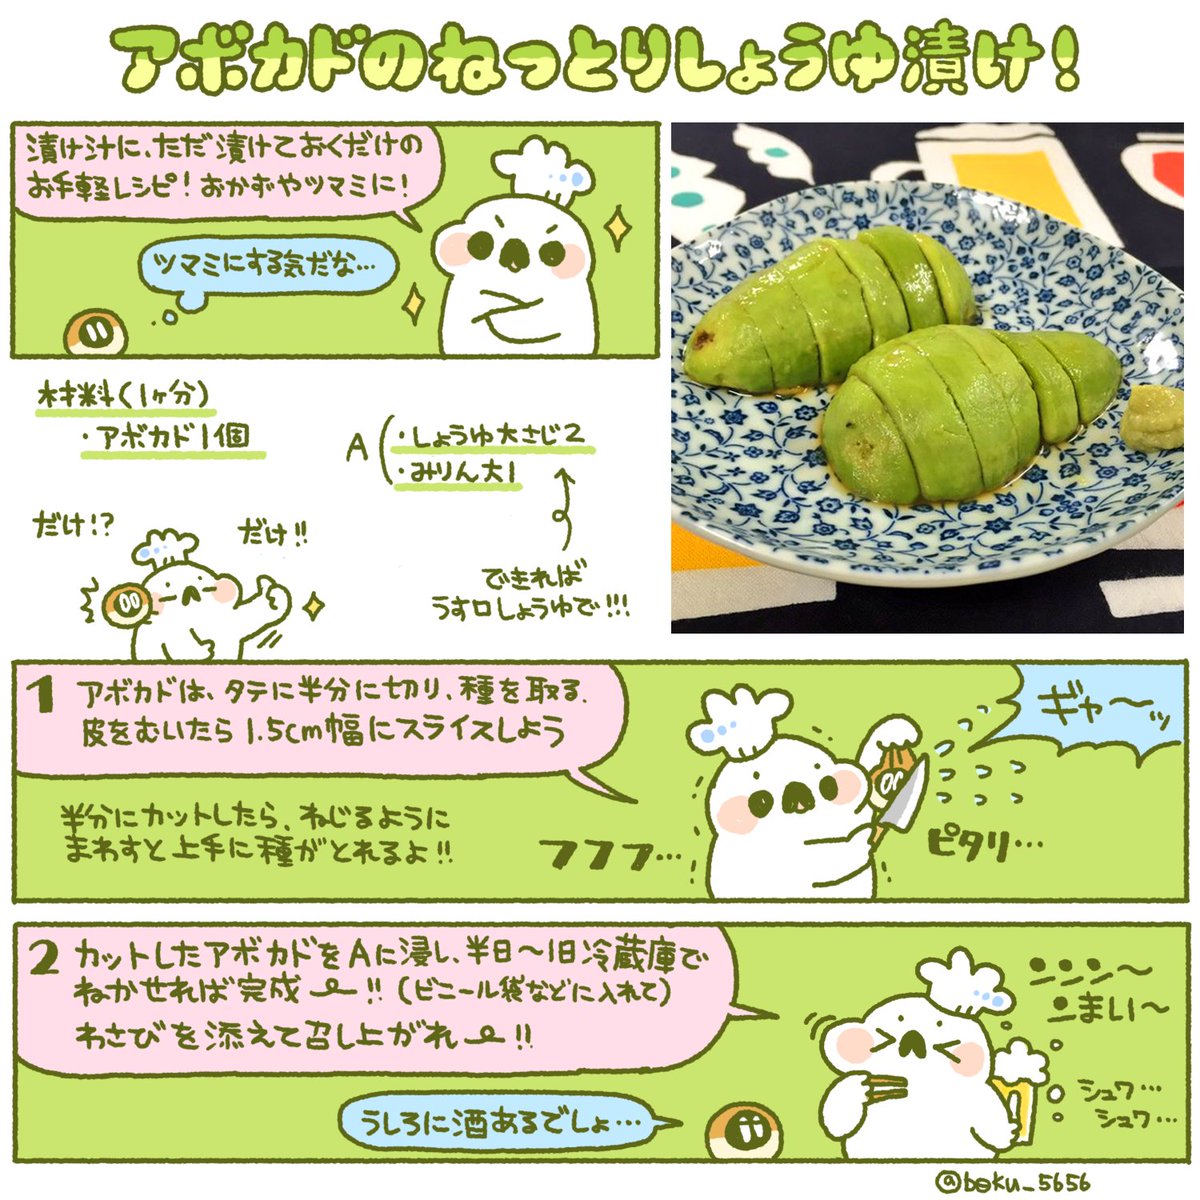 アボカドのねっとりしょうゆ漬けのレシピをまとめました！！！！(OO)/ 